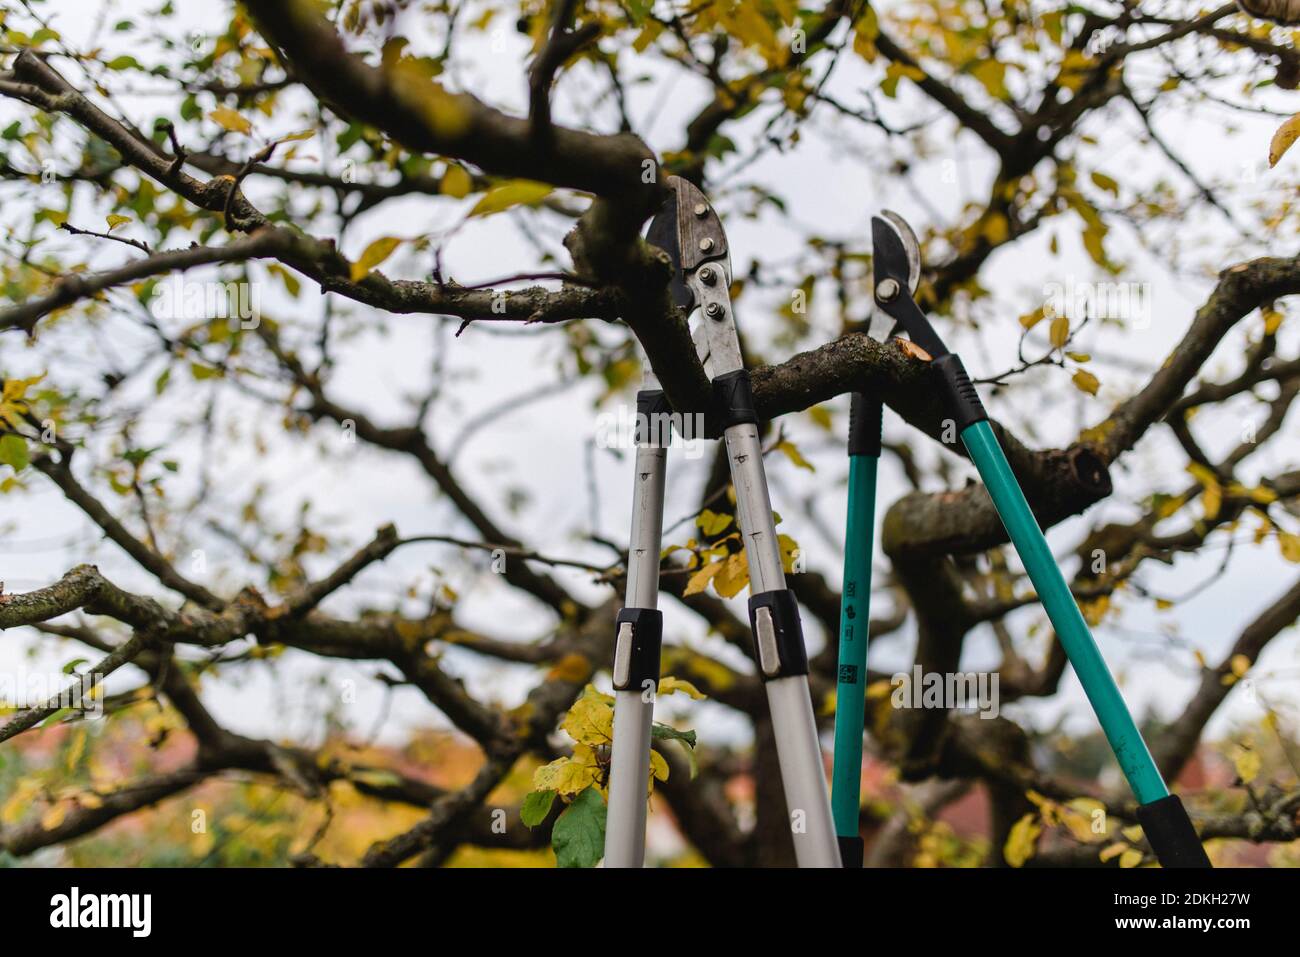 Zwei in einem Apfelbaum hängende Verschlüsse, Werkzeug zum Beschneiden eines Apfelbaums im Herbst Stockfoto